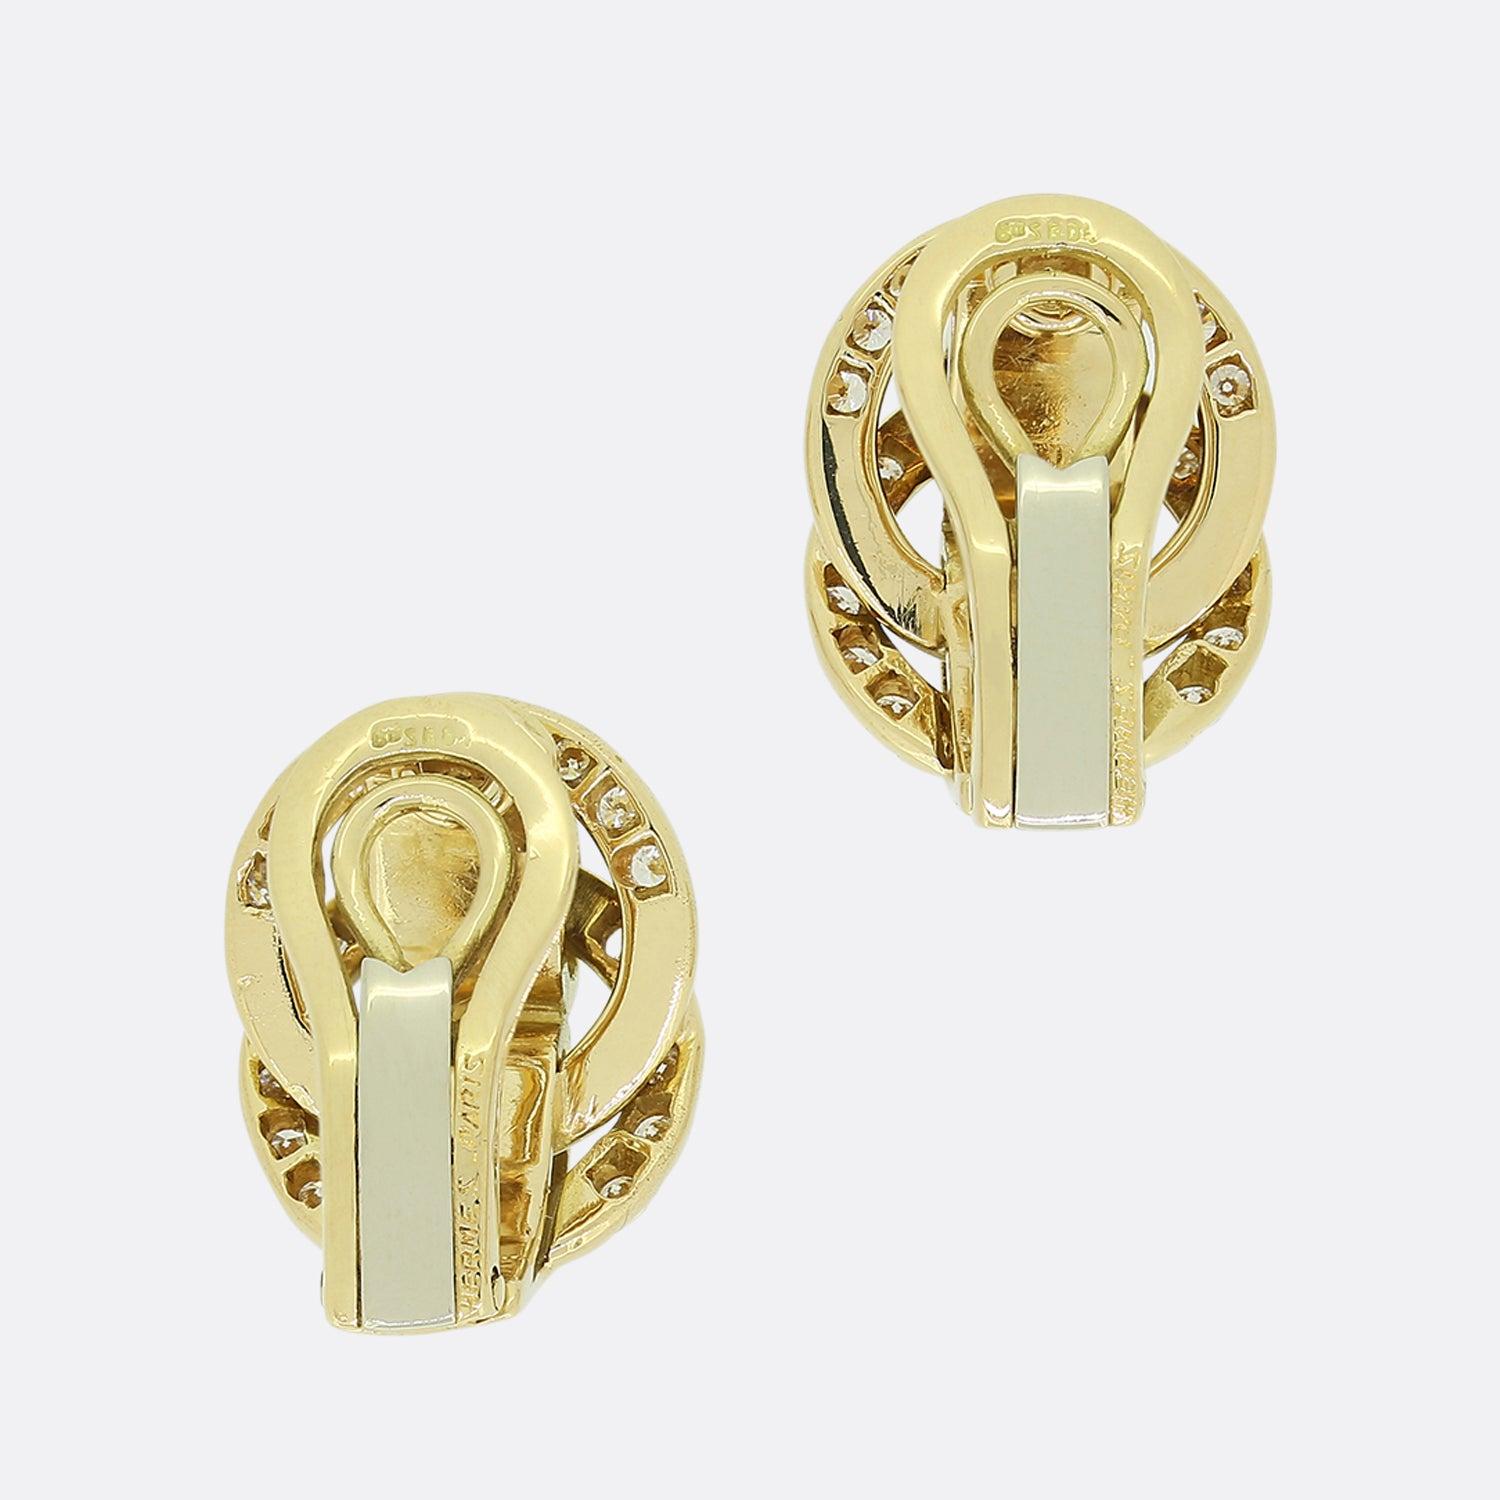 Dies ist ein schönes Paar Diamant-Clip-Ohrringe von dem sehr bekannten Designer Hermes. Ein passendes Paar, jeweils besetzt mit neunzehn Diamanten im Übergangsschliff in offenen Fassungen, insgesamt achtunddreißig mit einem Gesamtgewicht von etwa